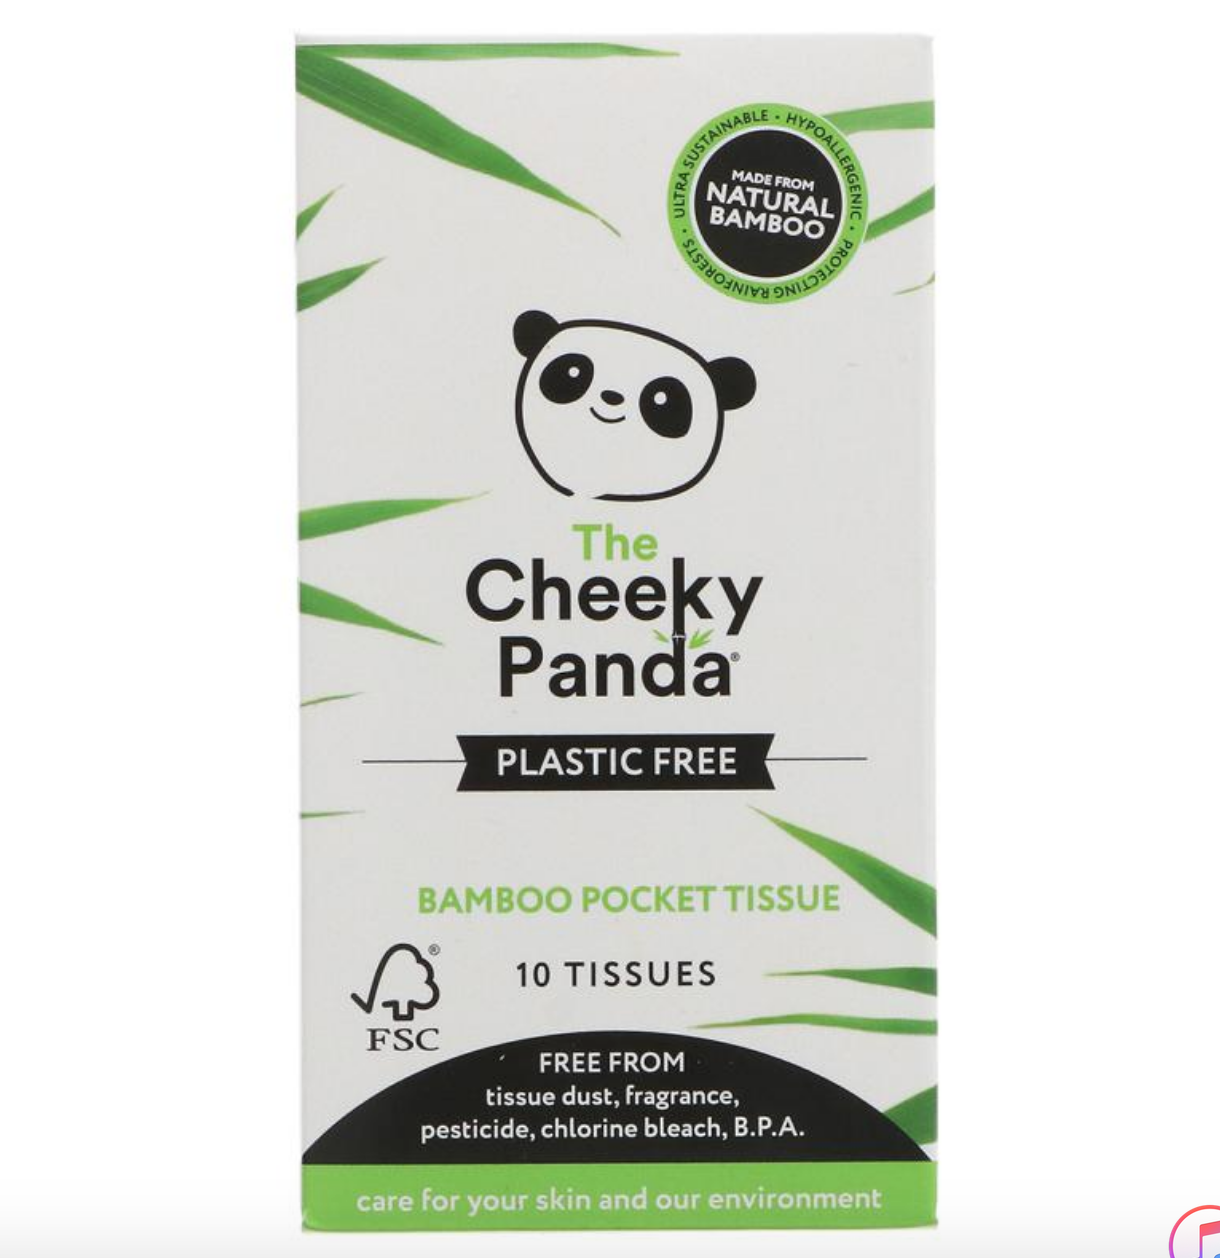 Bamboo Pocket Tissue | The Cheeky Panda